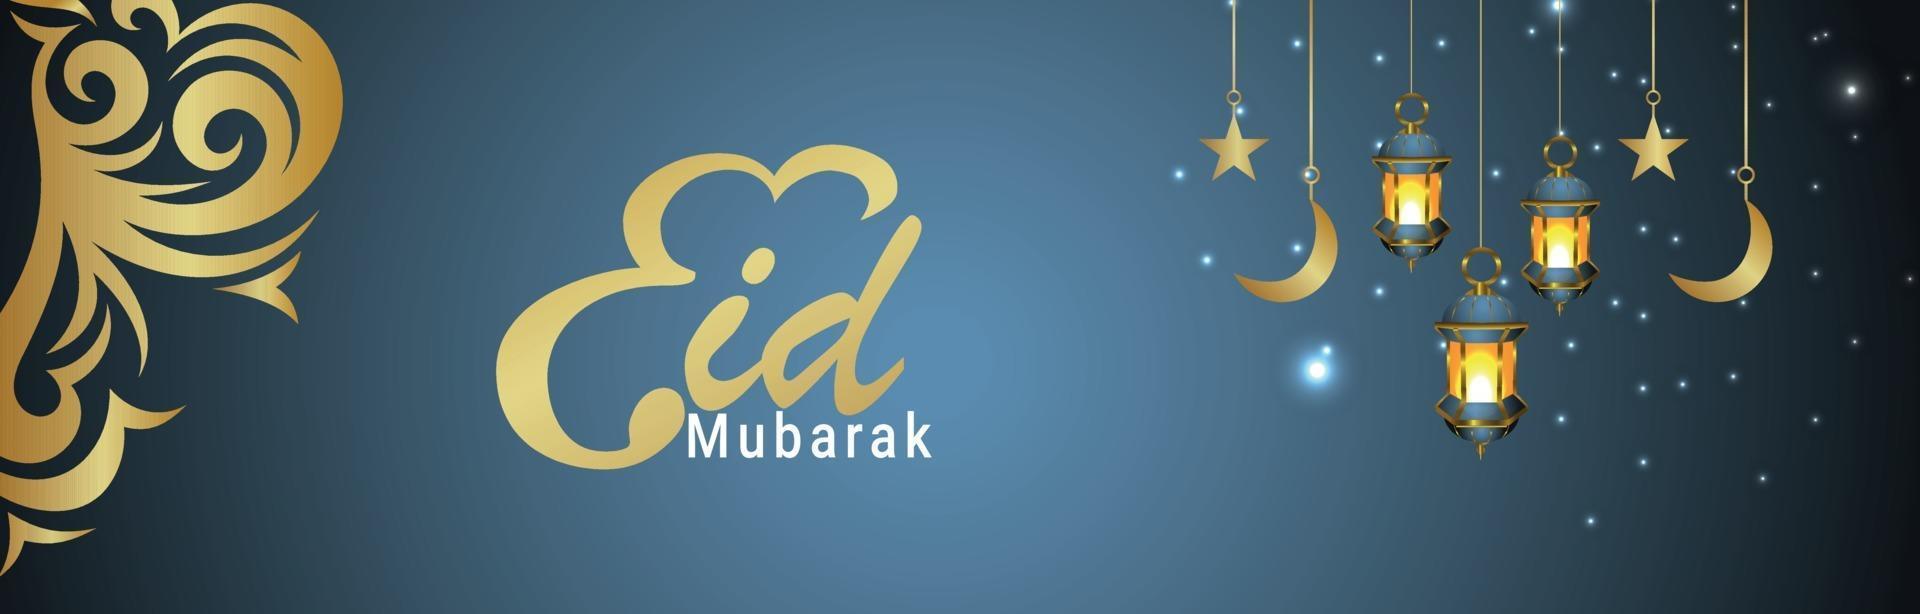 eid mubarak viering banner vector